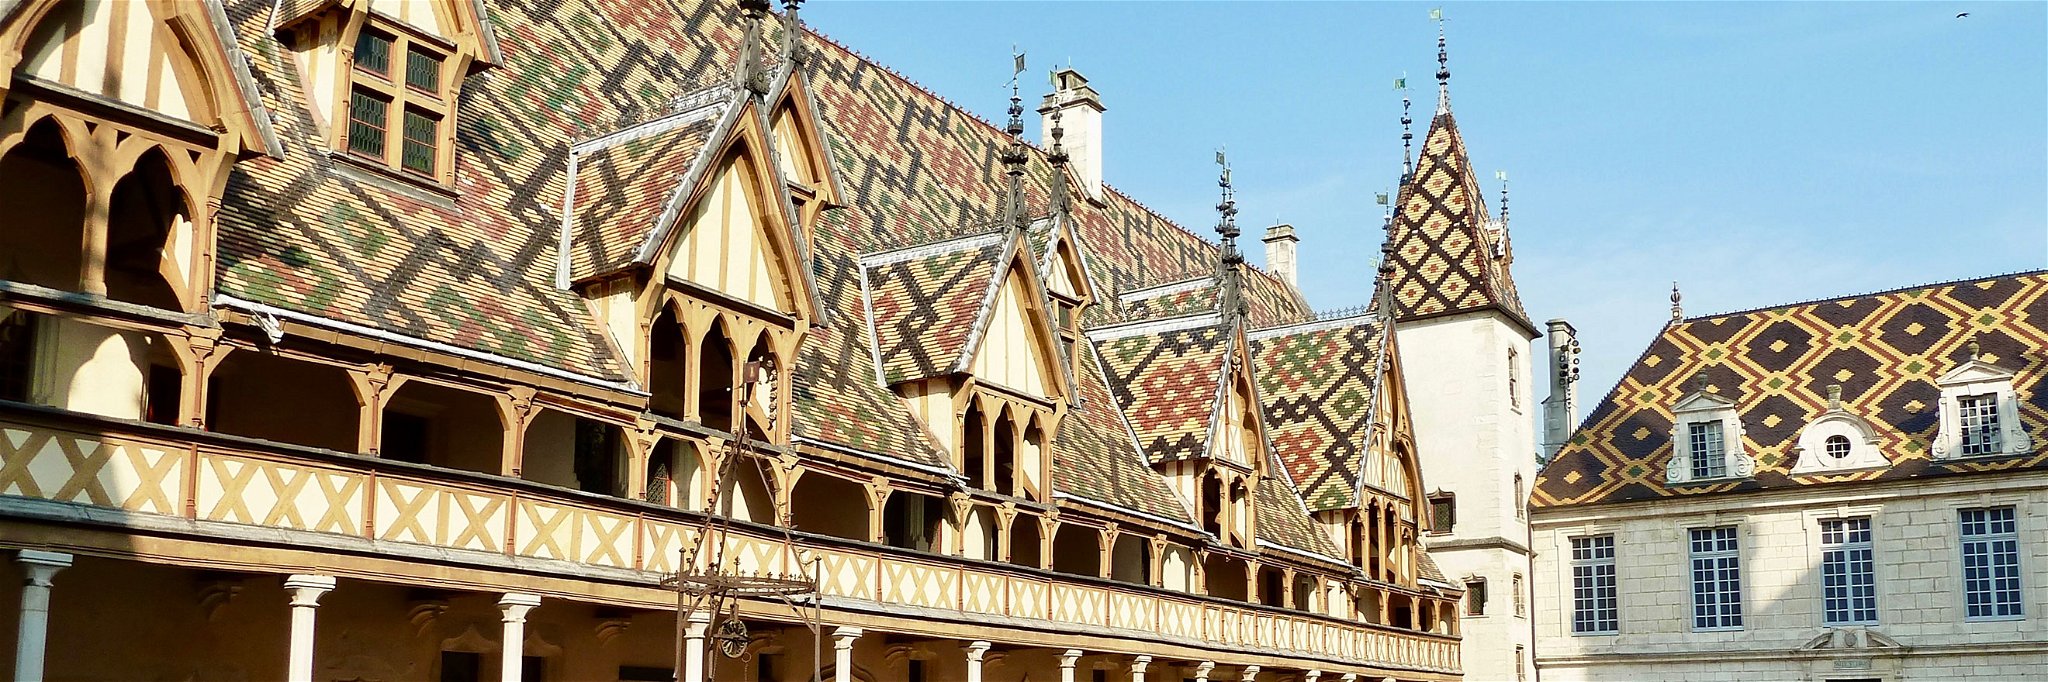 Mit seinem buntgedeckten Dach ist die Hospitalstiftung aus dem 15. Jahrhundert ein Wahrzeichen des Burgunds.